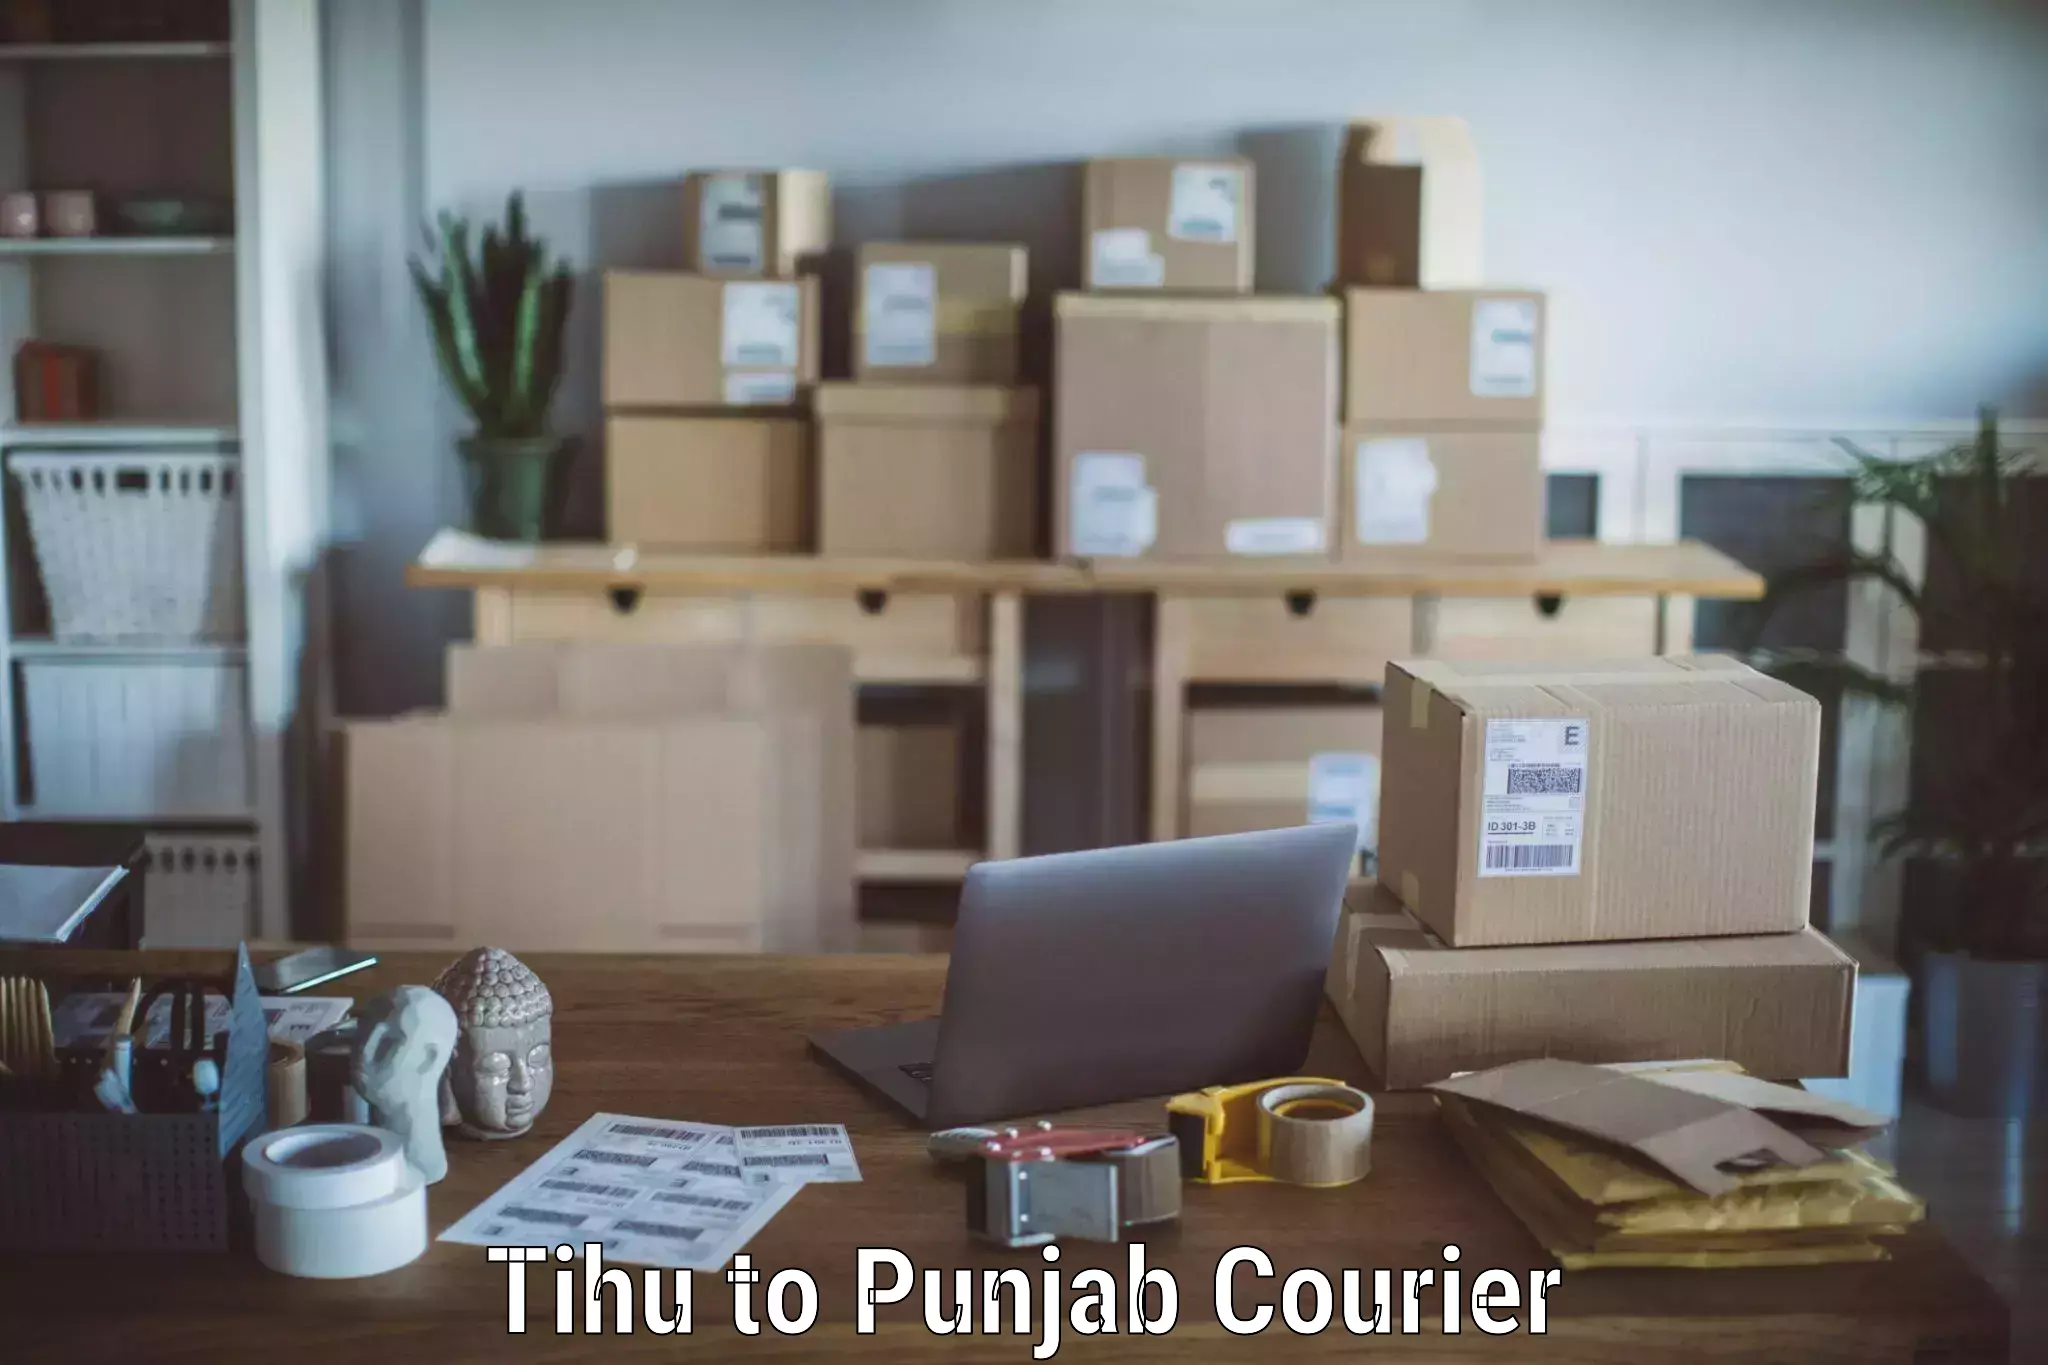 Professional moving assistance Tihu to Punjab